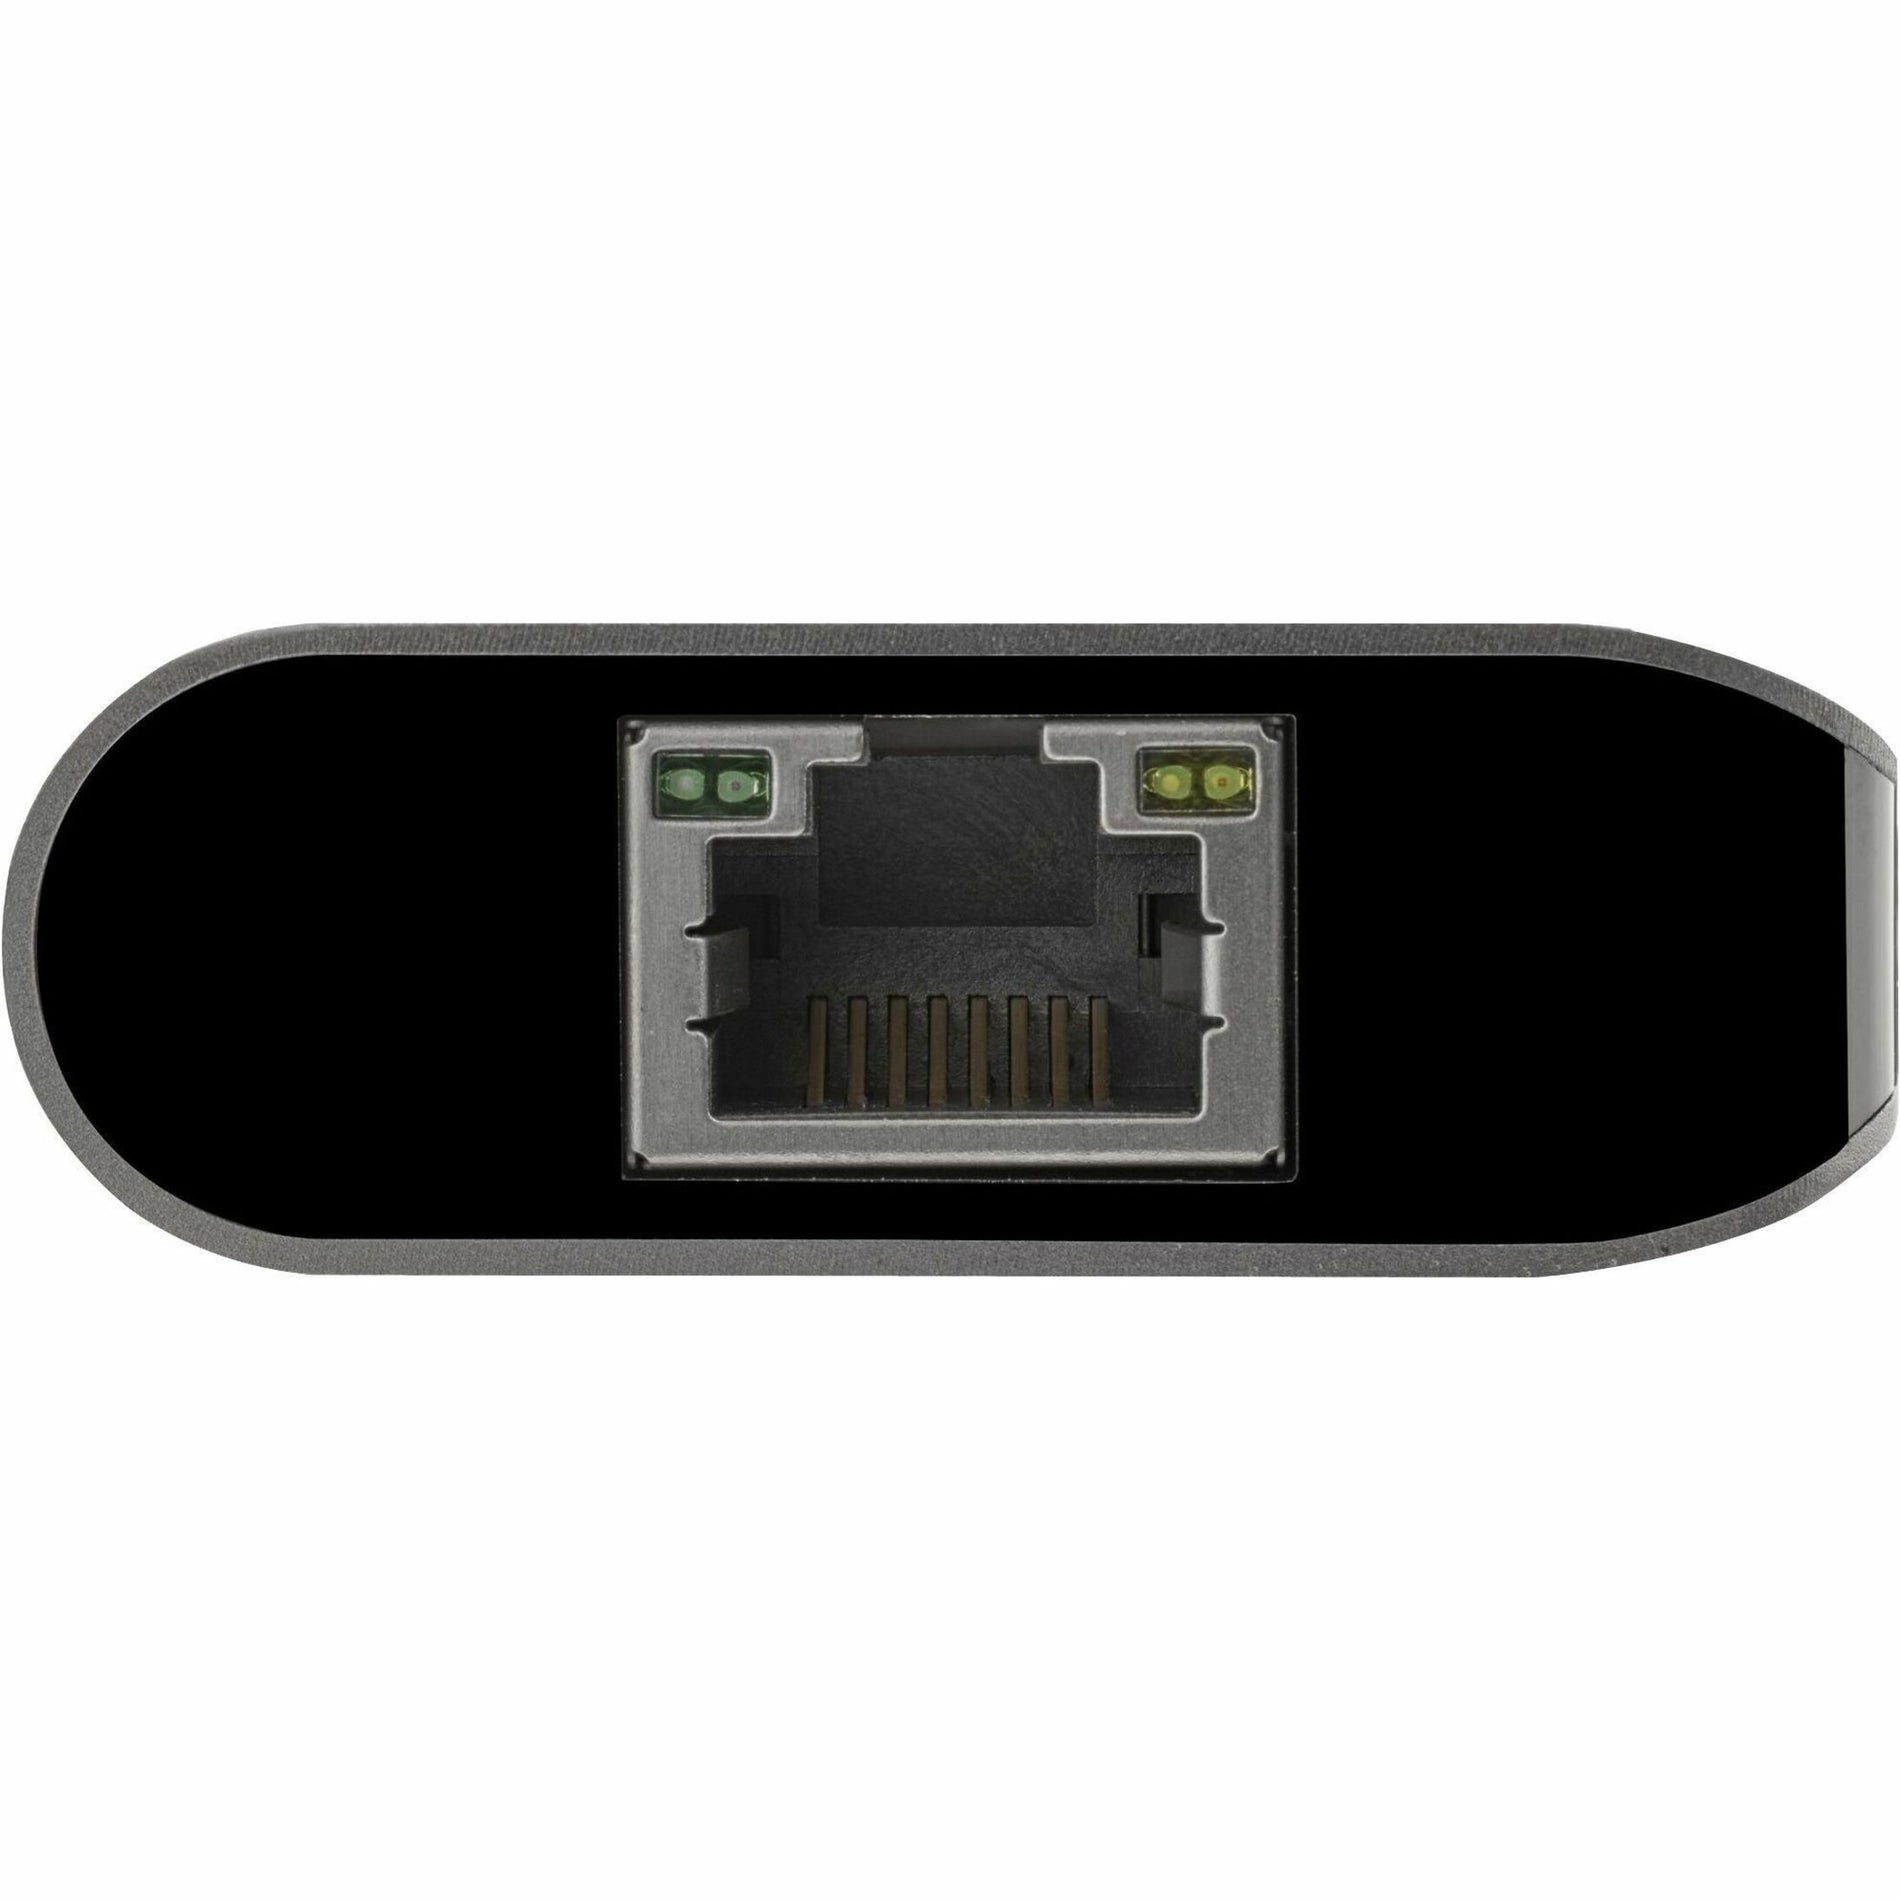 星特科技 DKT30CSDHPD3 USB-C 多端口适配器（HDMI - SD 读卡器 - PD 3.0，4K 显示器，千兆以太网） 星特科技 - StarTech.com